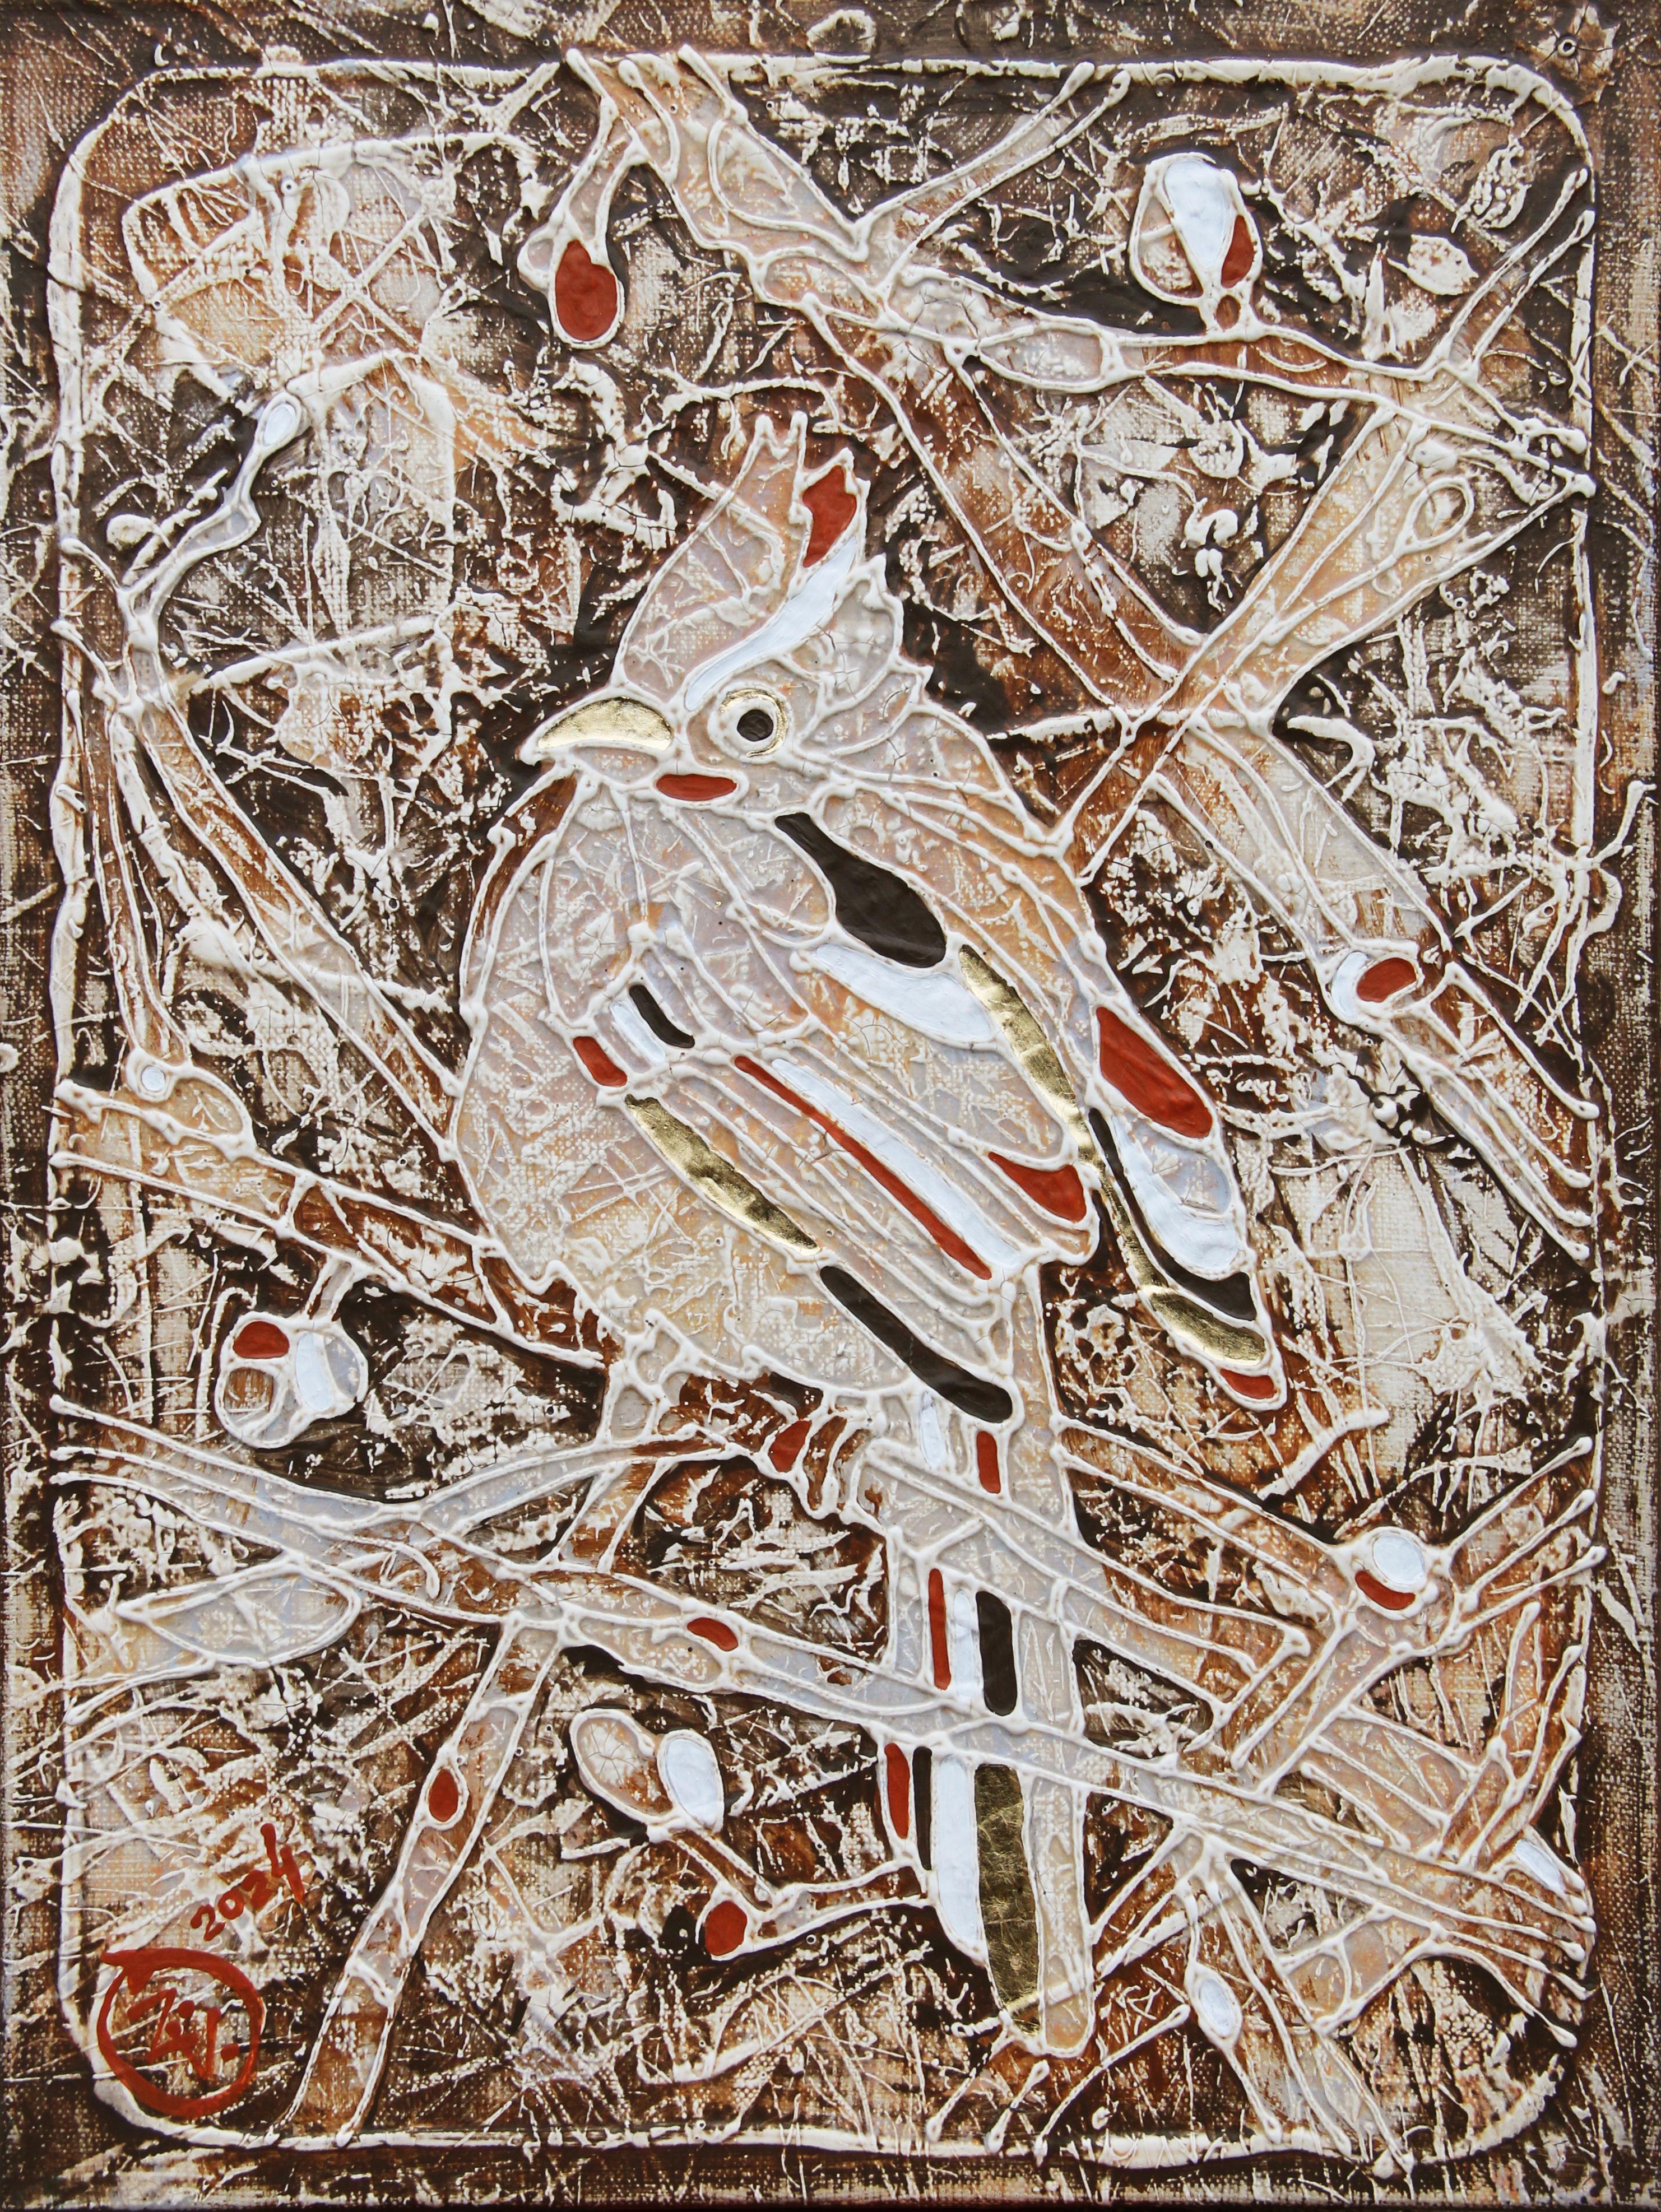 La peinture est réalisée selon la technique de l'auteur, à savoir la peinture acrylique sur toile à base de Vasily Zianko, en utilisant une variété de textures, de lavis, de glacis les plus fins, de contours volumétriques. Les œuvres d'art sont